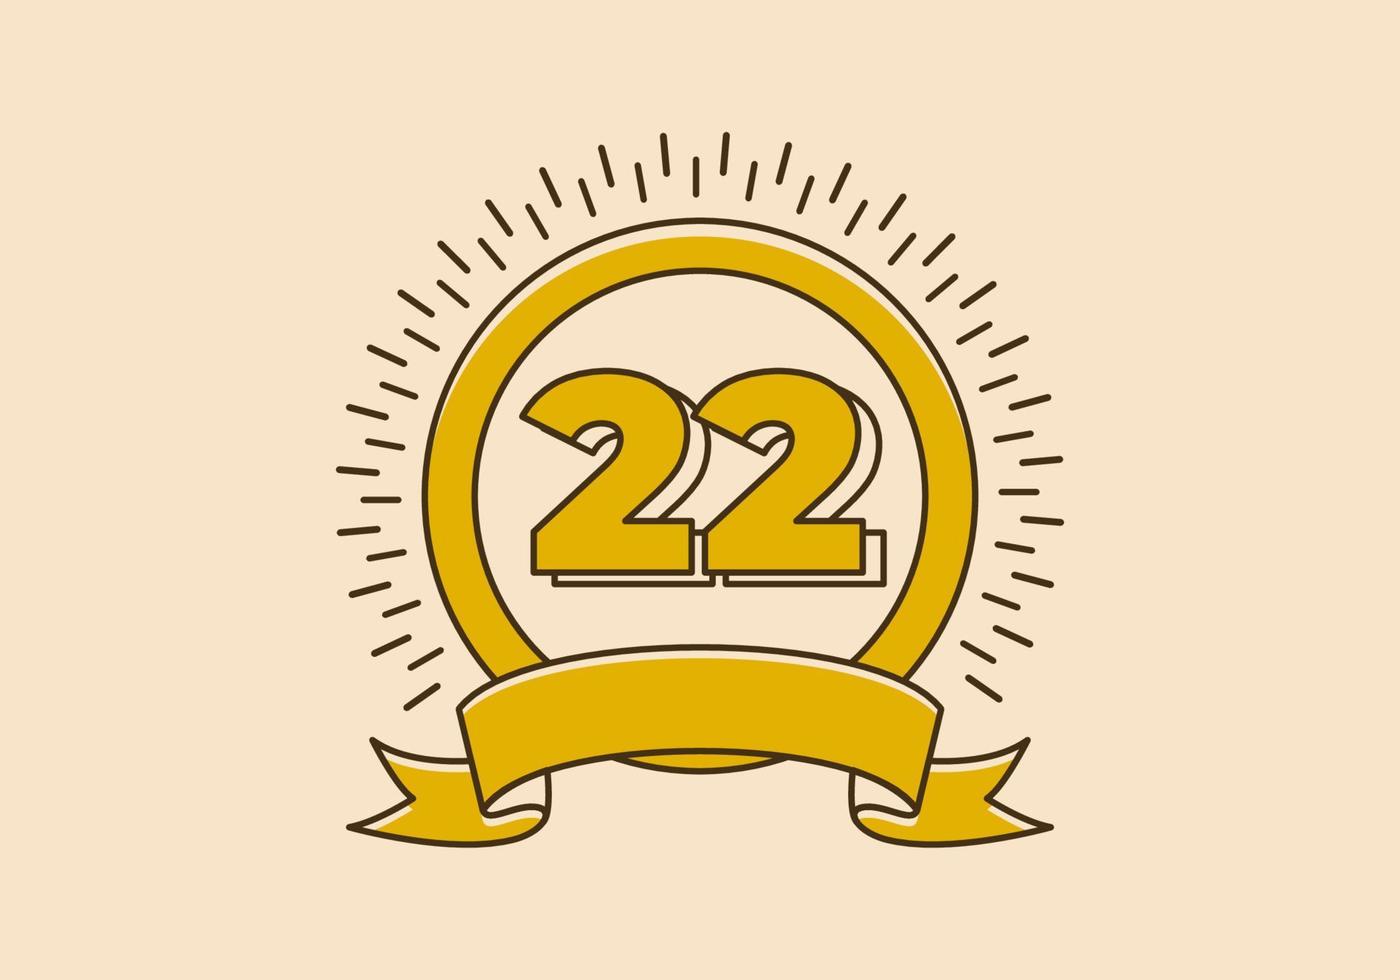 Vintage gelbes Kreisabzeichen mit der Nummer 22 darauf vektor